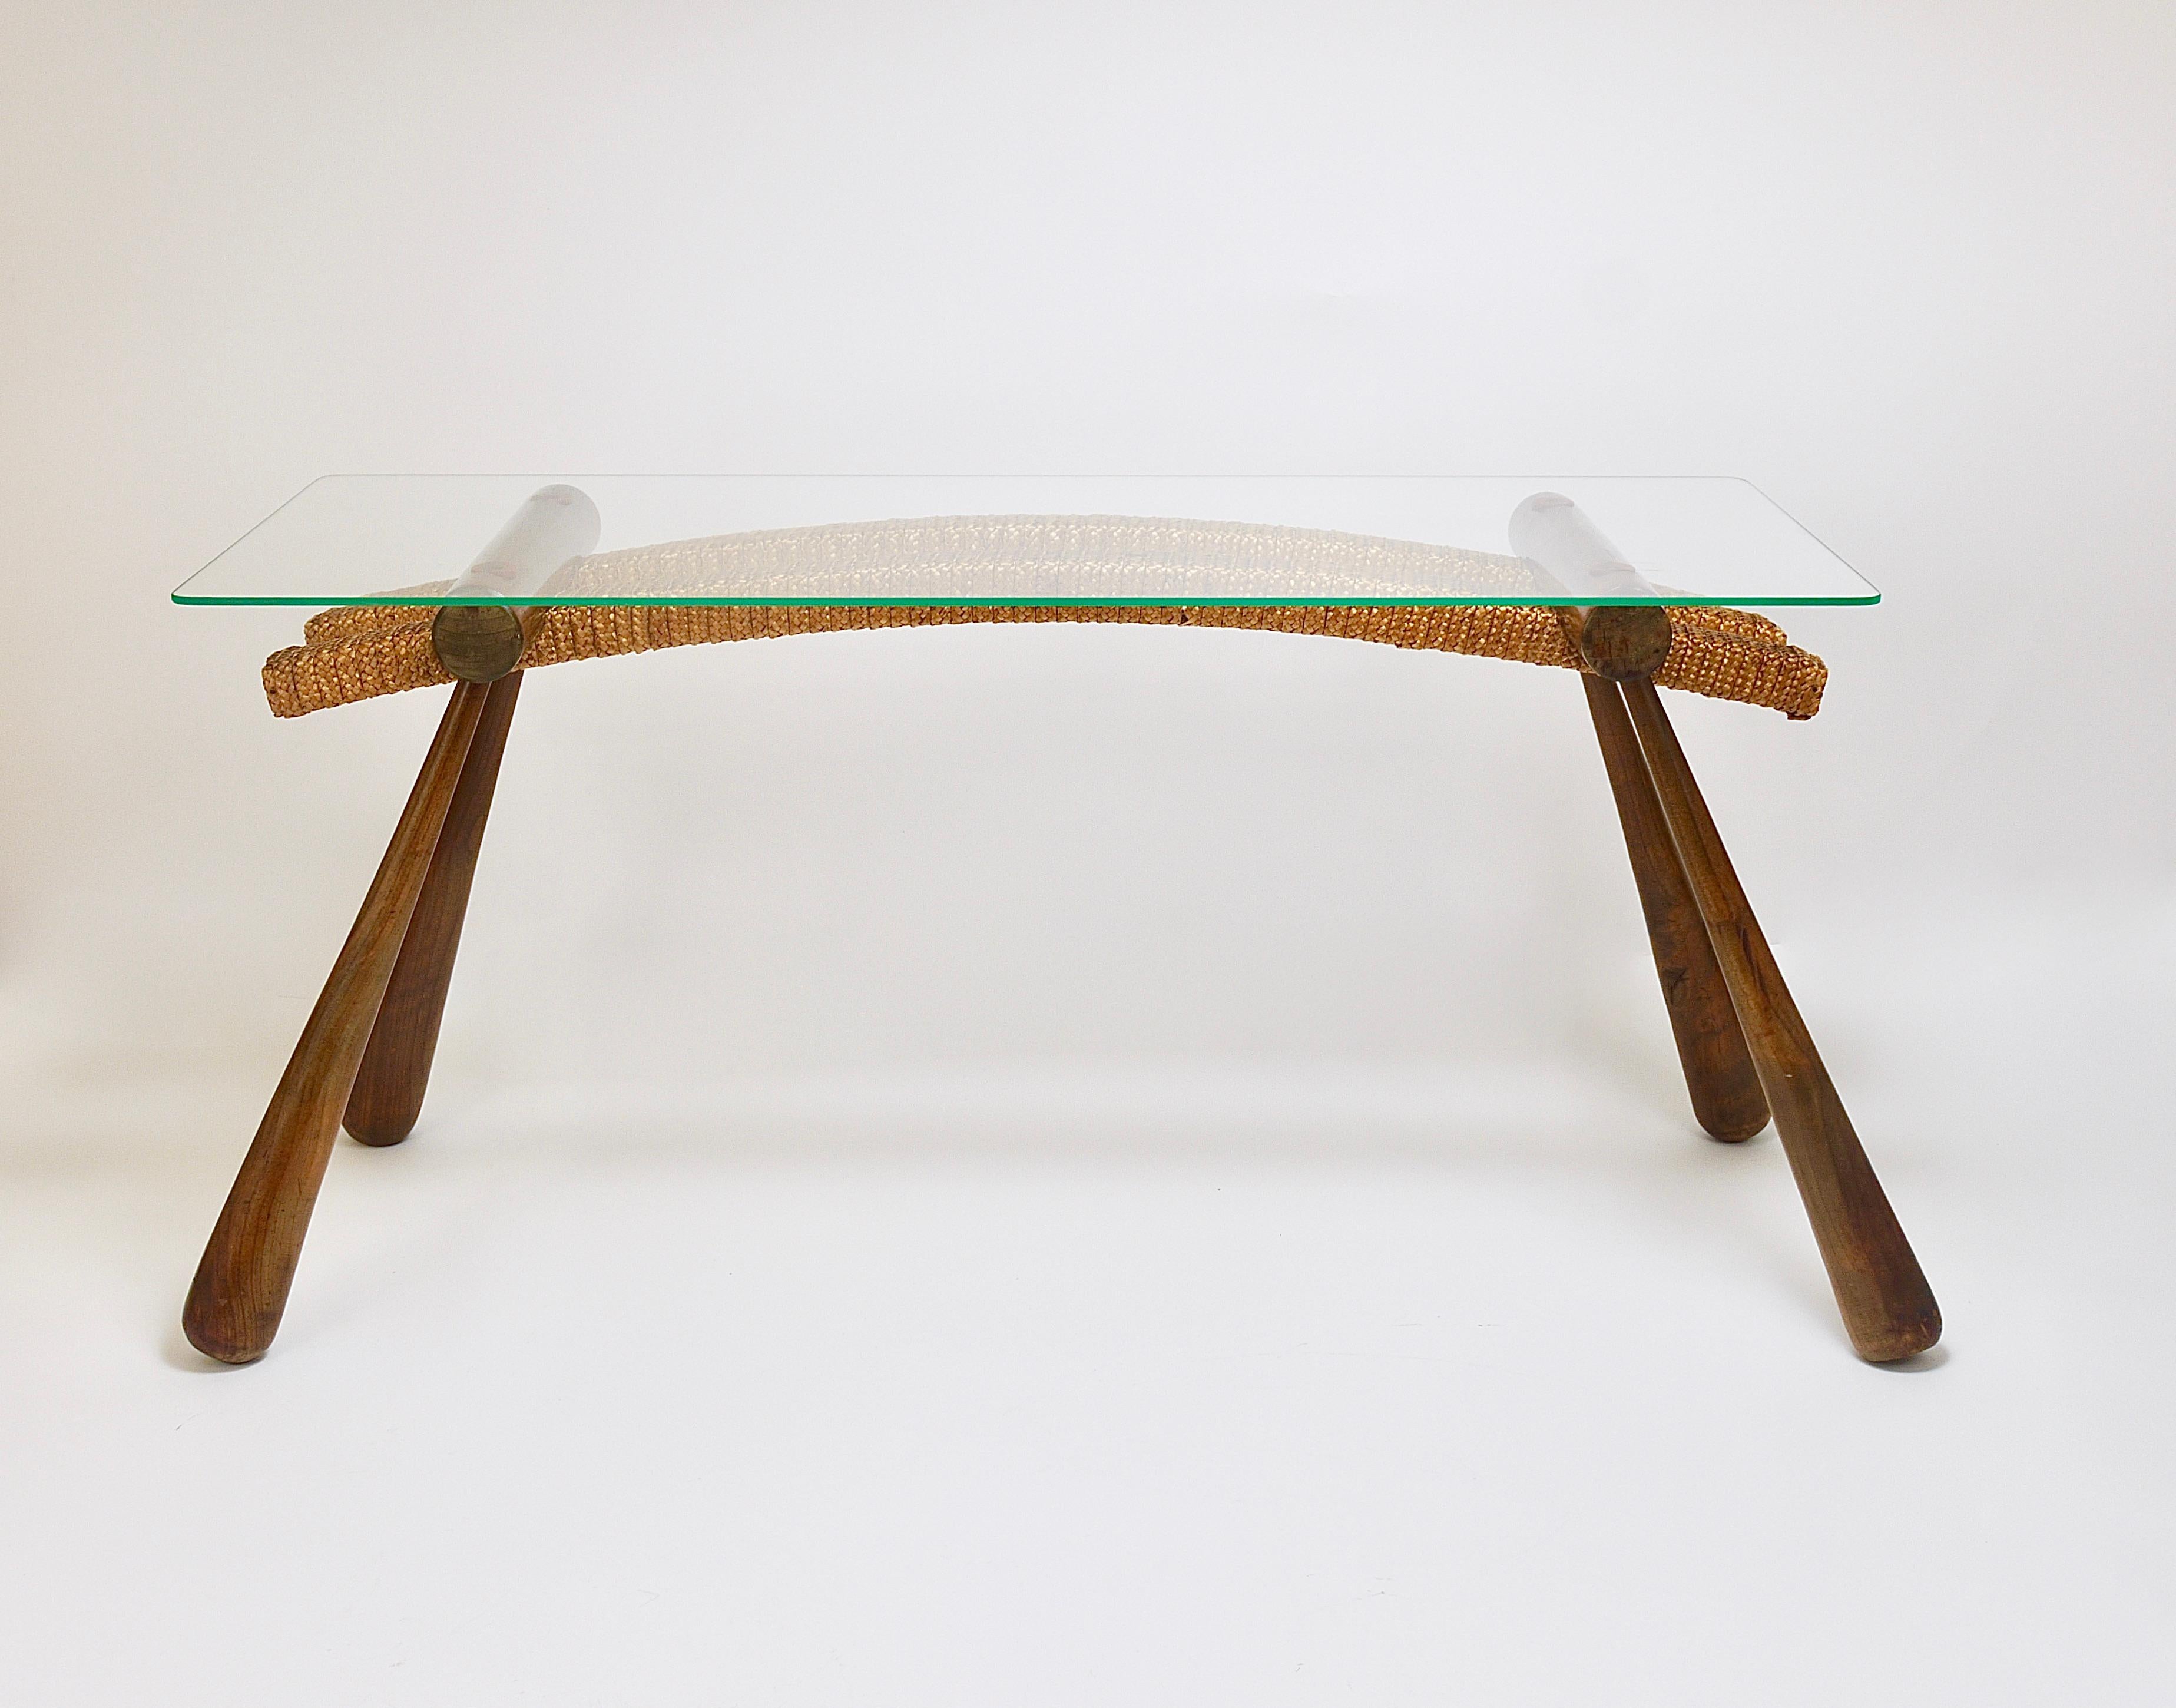 Ein sehr empfehlenswerter, von Japan inspirierter, organischer Tisch der österreichischen Moderne. Ein elegantes Stück, das als Beistelltisch, Couchtisch, Ablagetisch oder Beistelltisch verwendet werden kann. Auch als Blumenbank oder Ständer